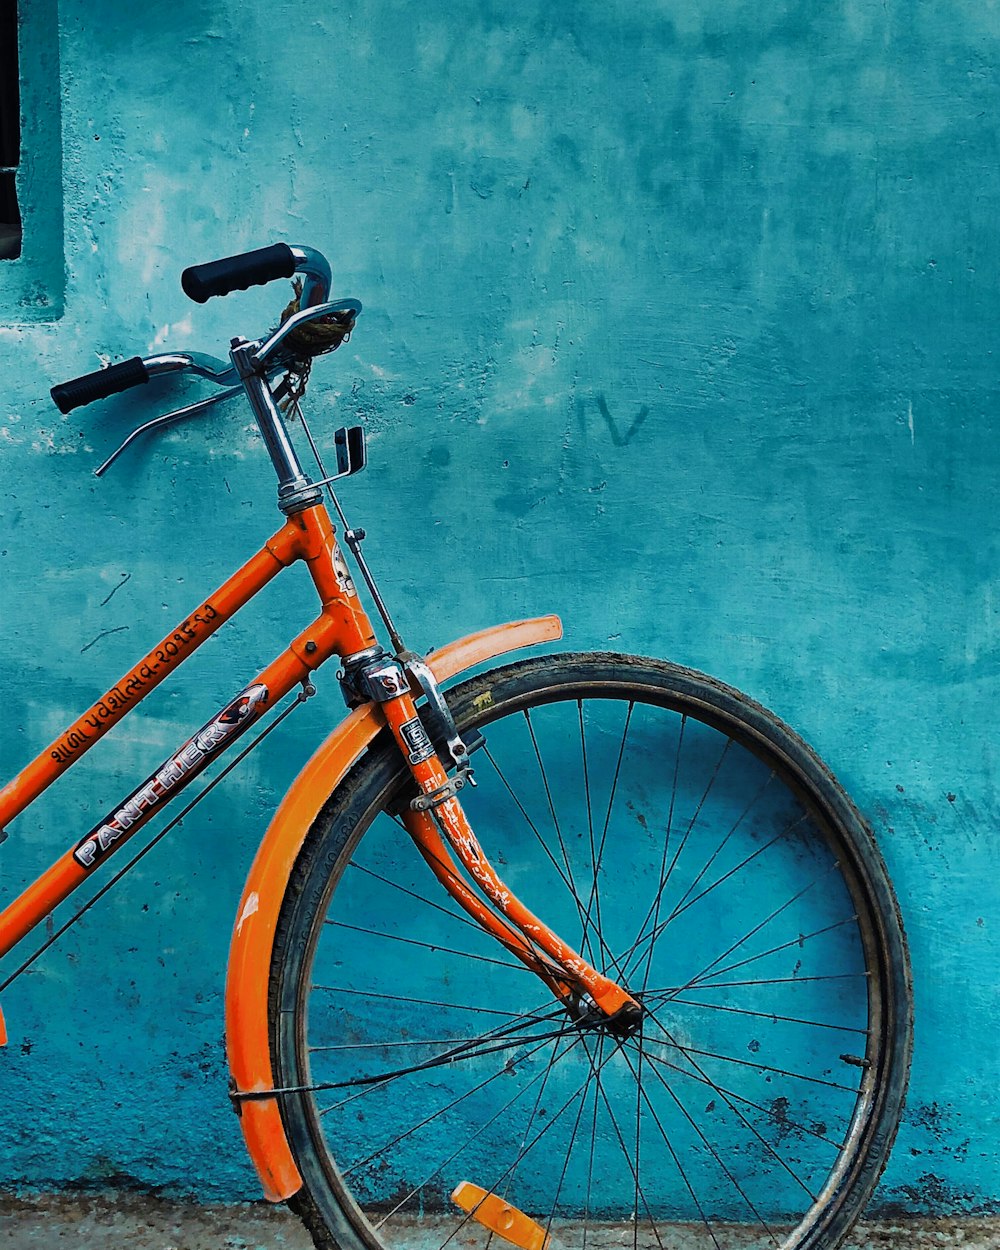 vélo orange et noir s’appuyant sur le mur peint en bleu